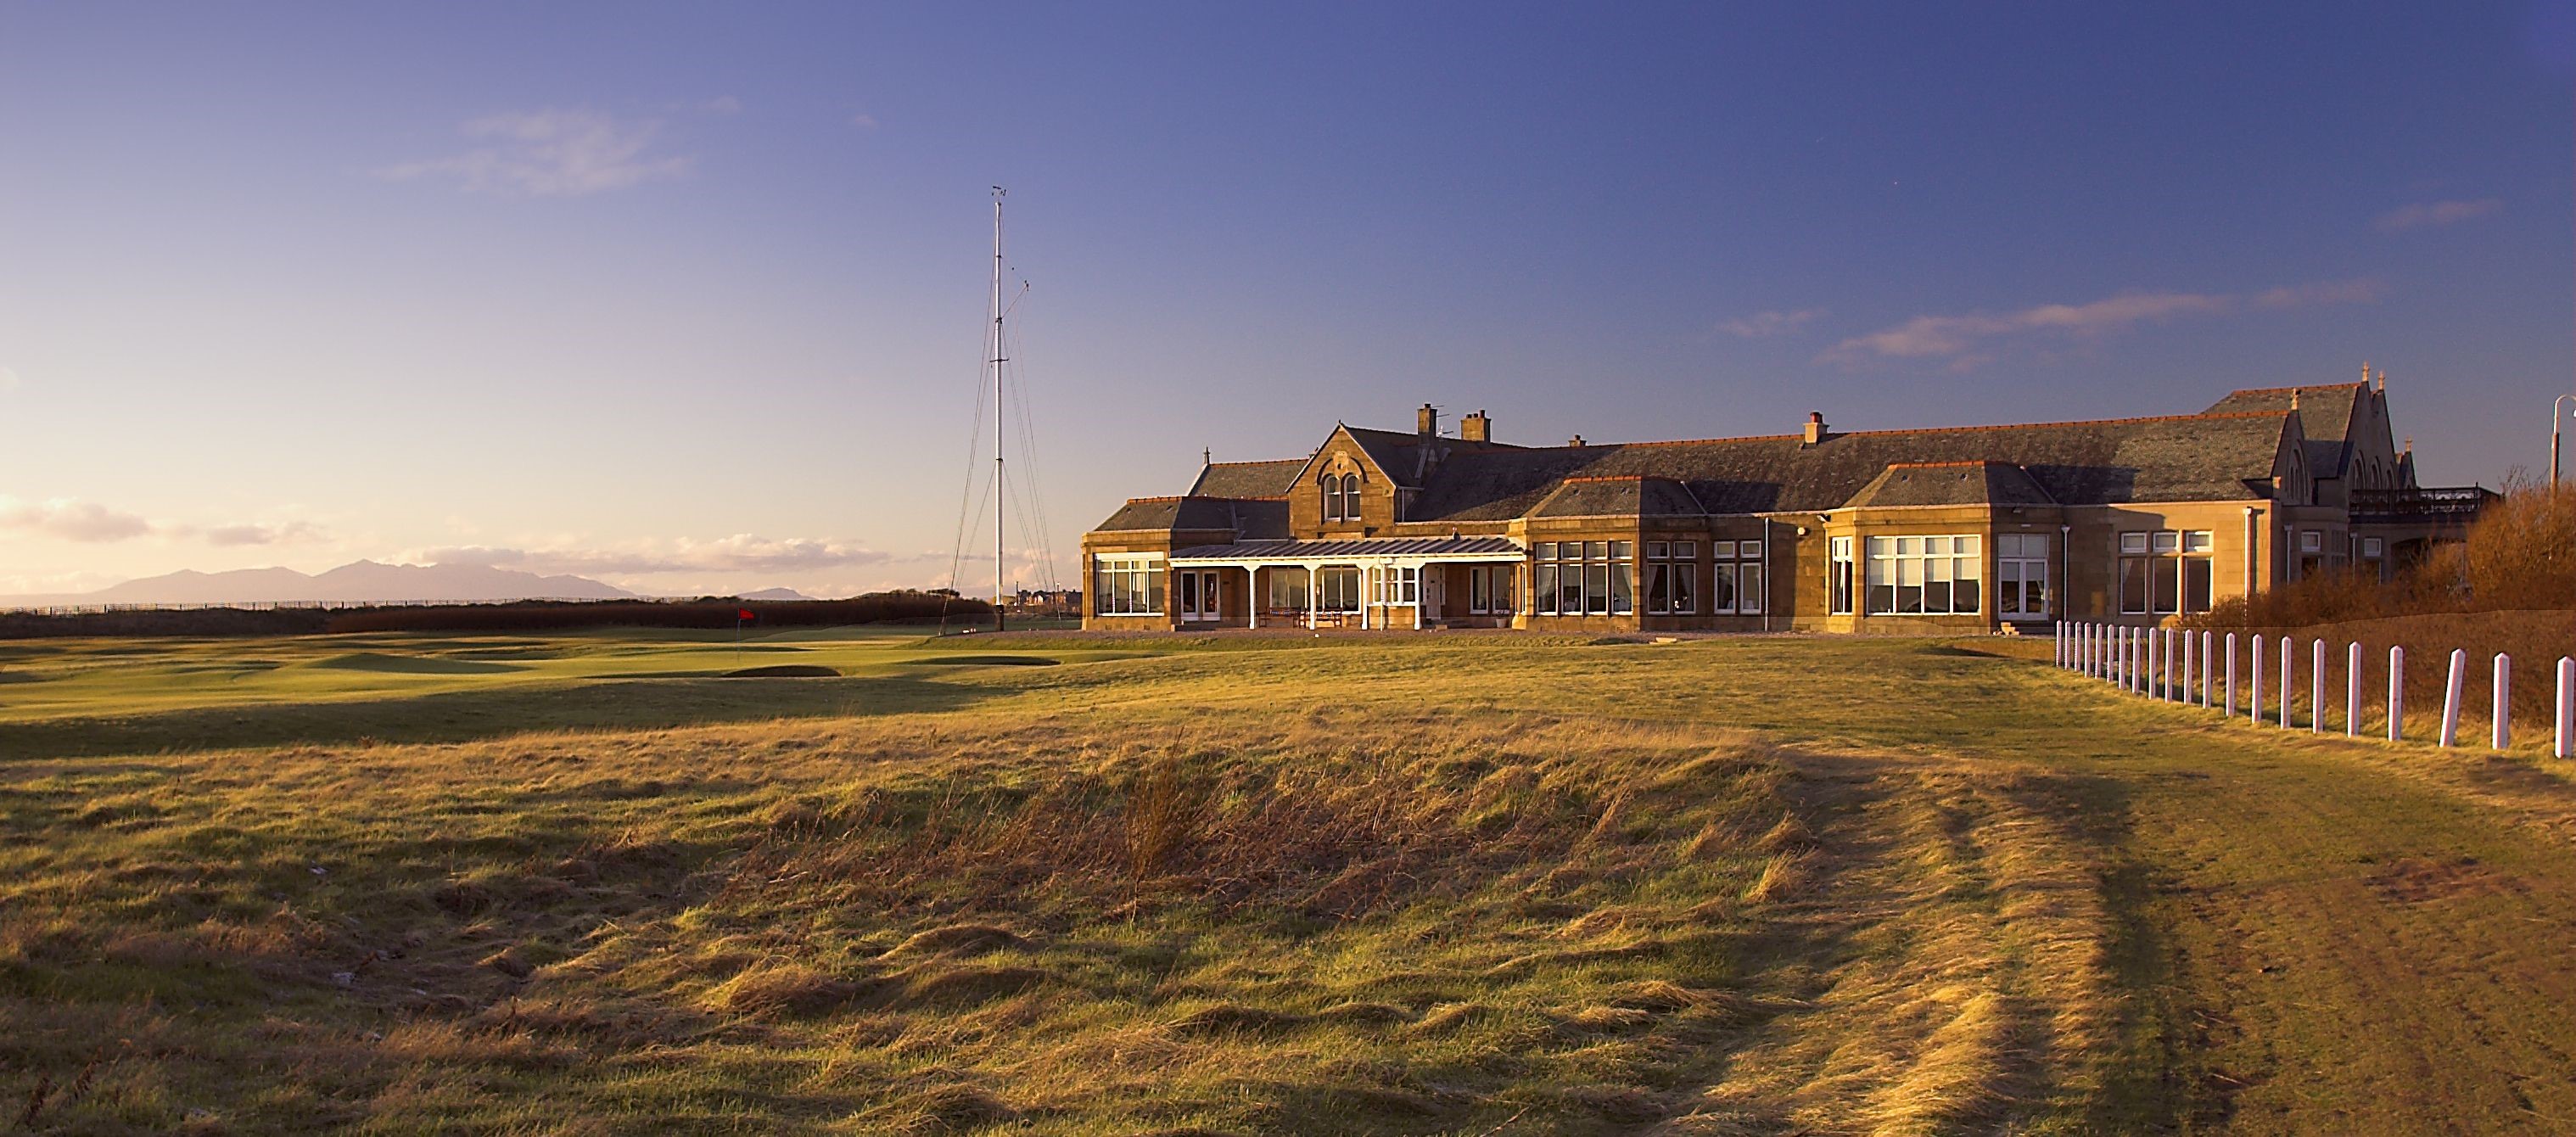 Glasgow området, Skotland, Royal Troon Golf Club